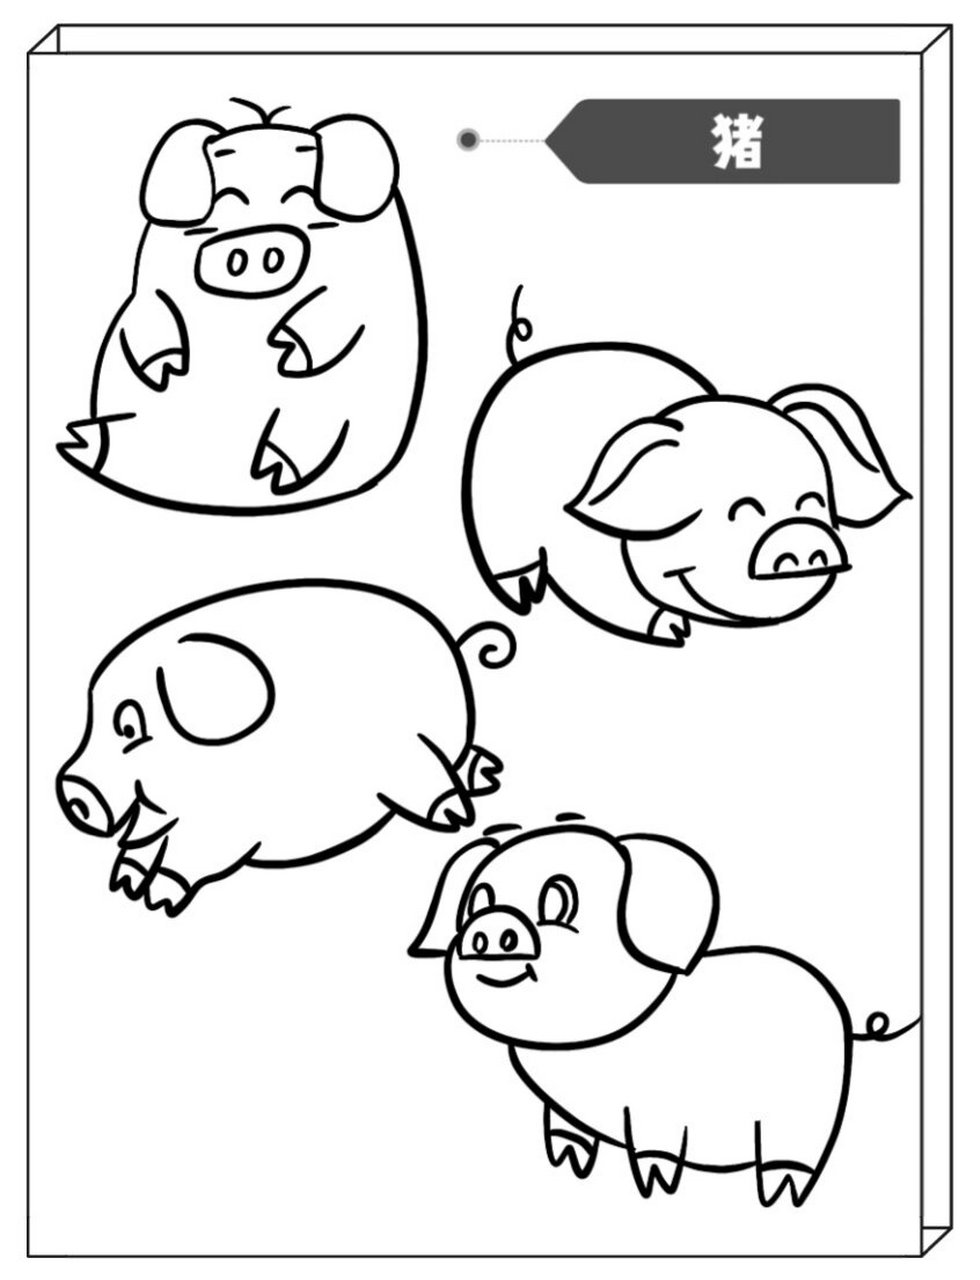 猪怎么画简笔画 全身图片